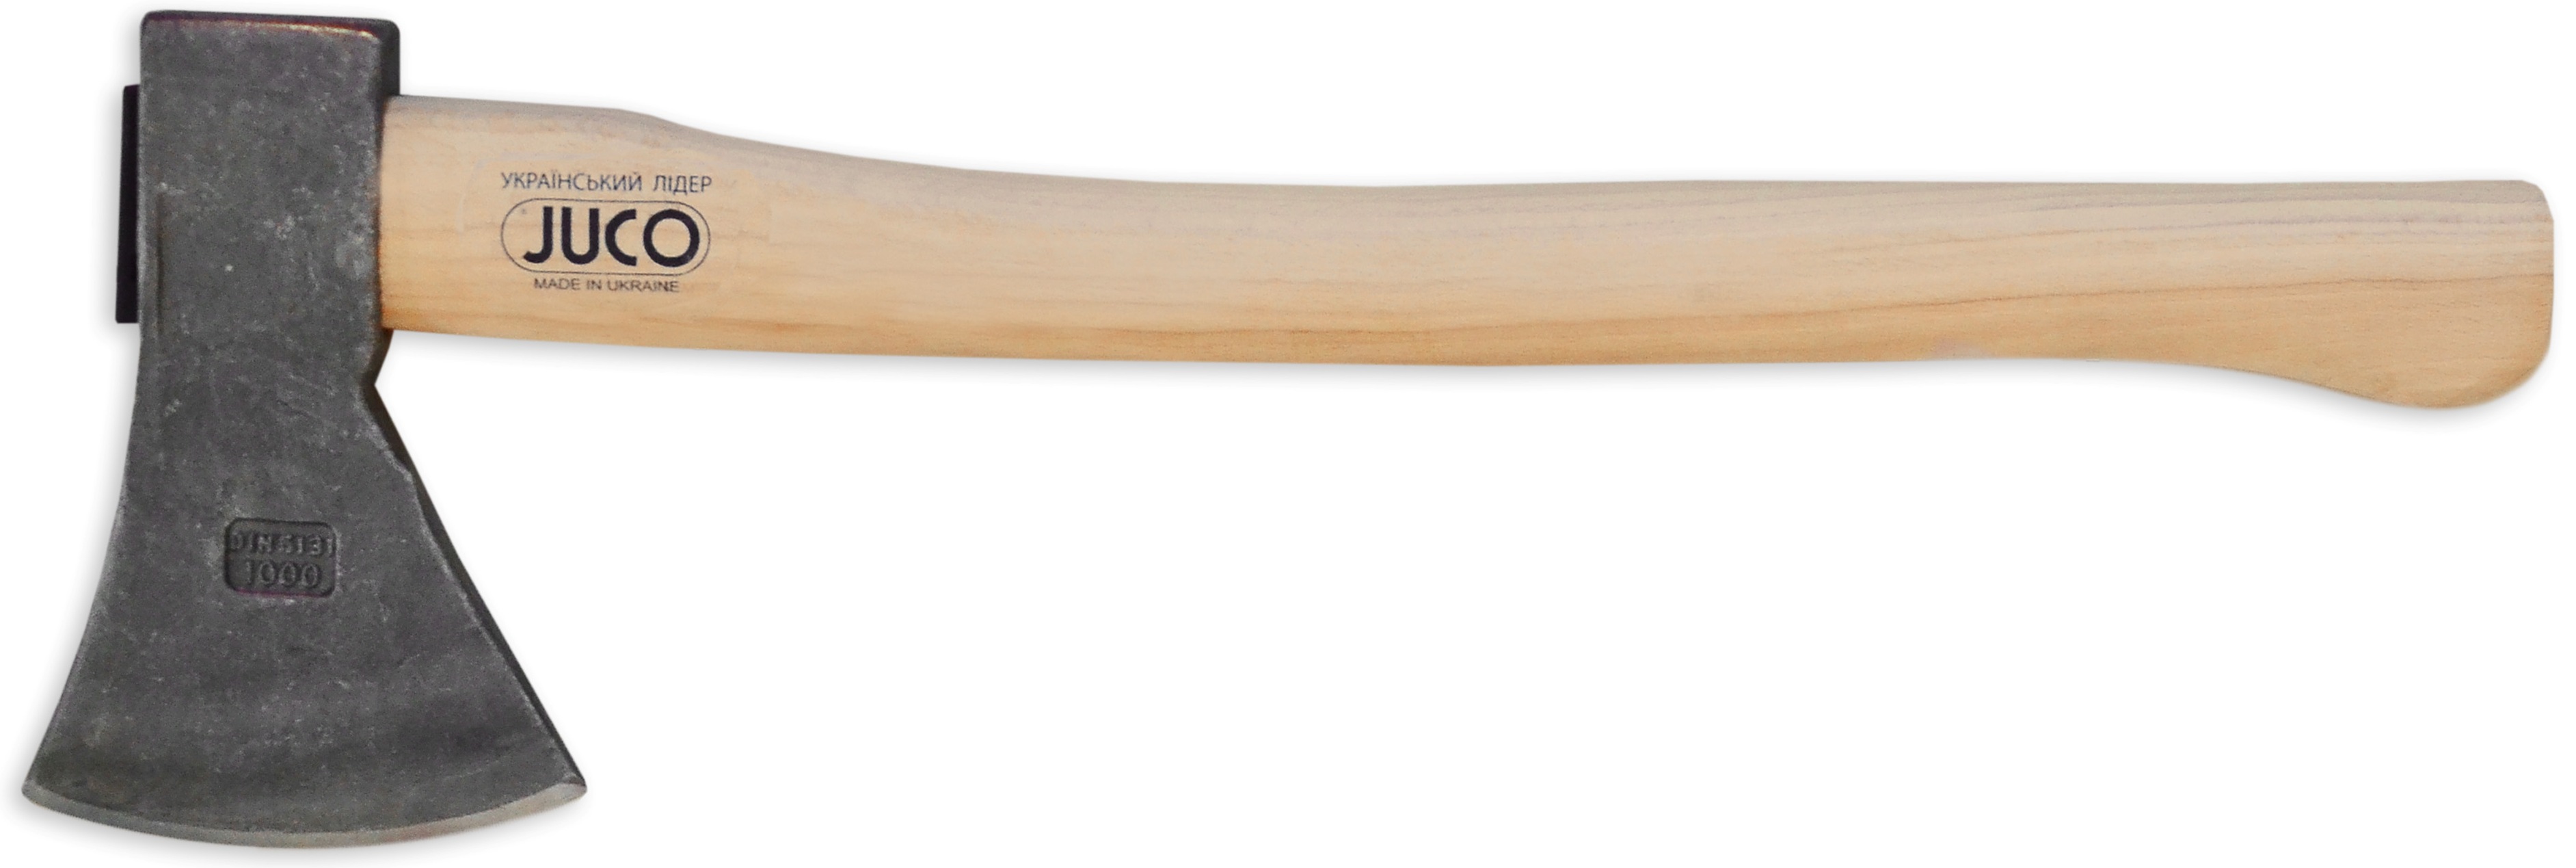 39-654 Топор с деревянной ручкой, JUCO (Украина), 600 г